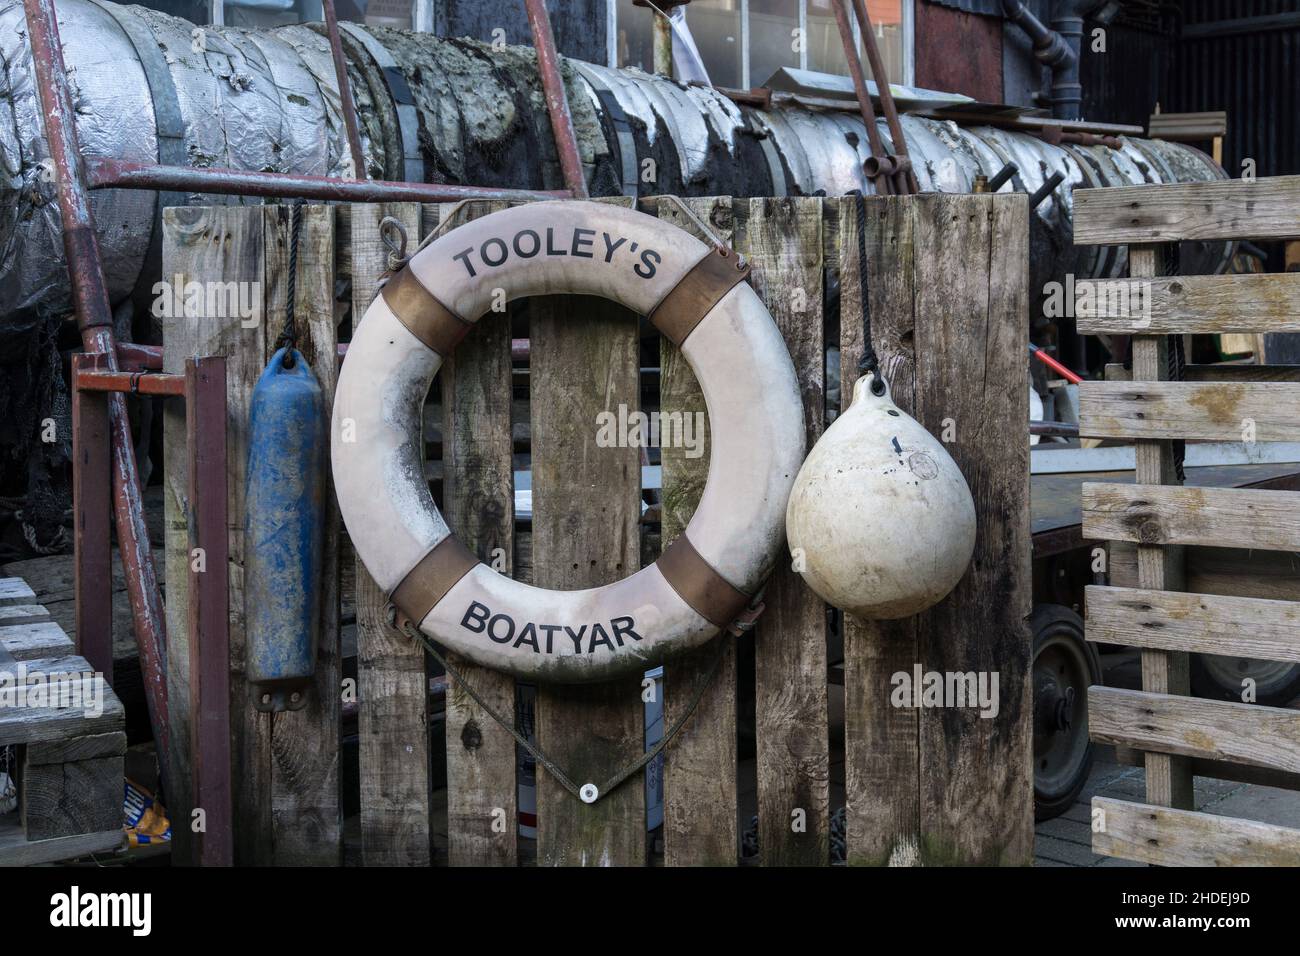 Tooleys Historic Boatyard, un'attrazione turistica sul canale di Oxford, Banbury, Oxfordshire, Regno Unito Foto Stock